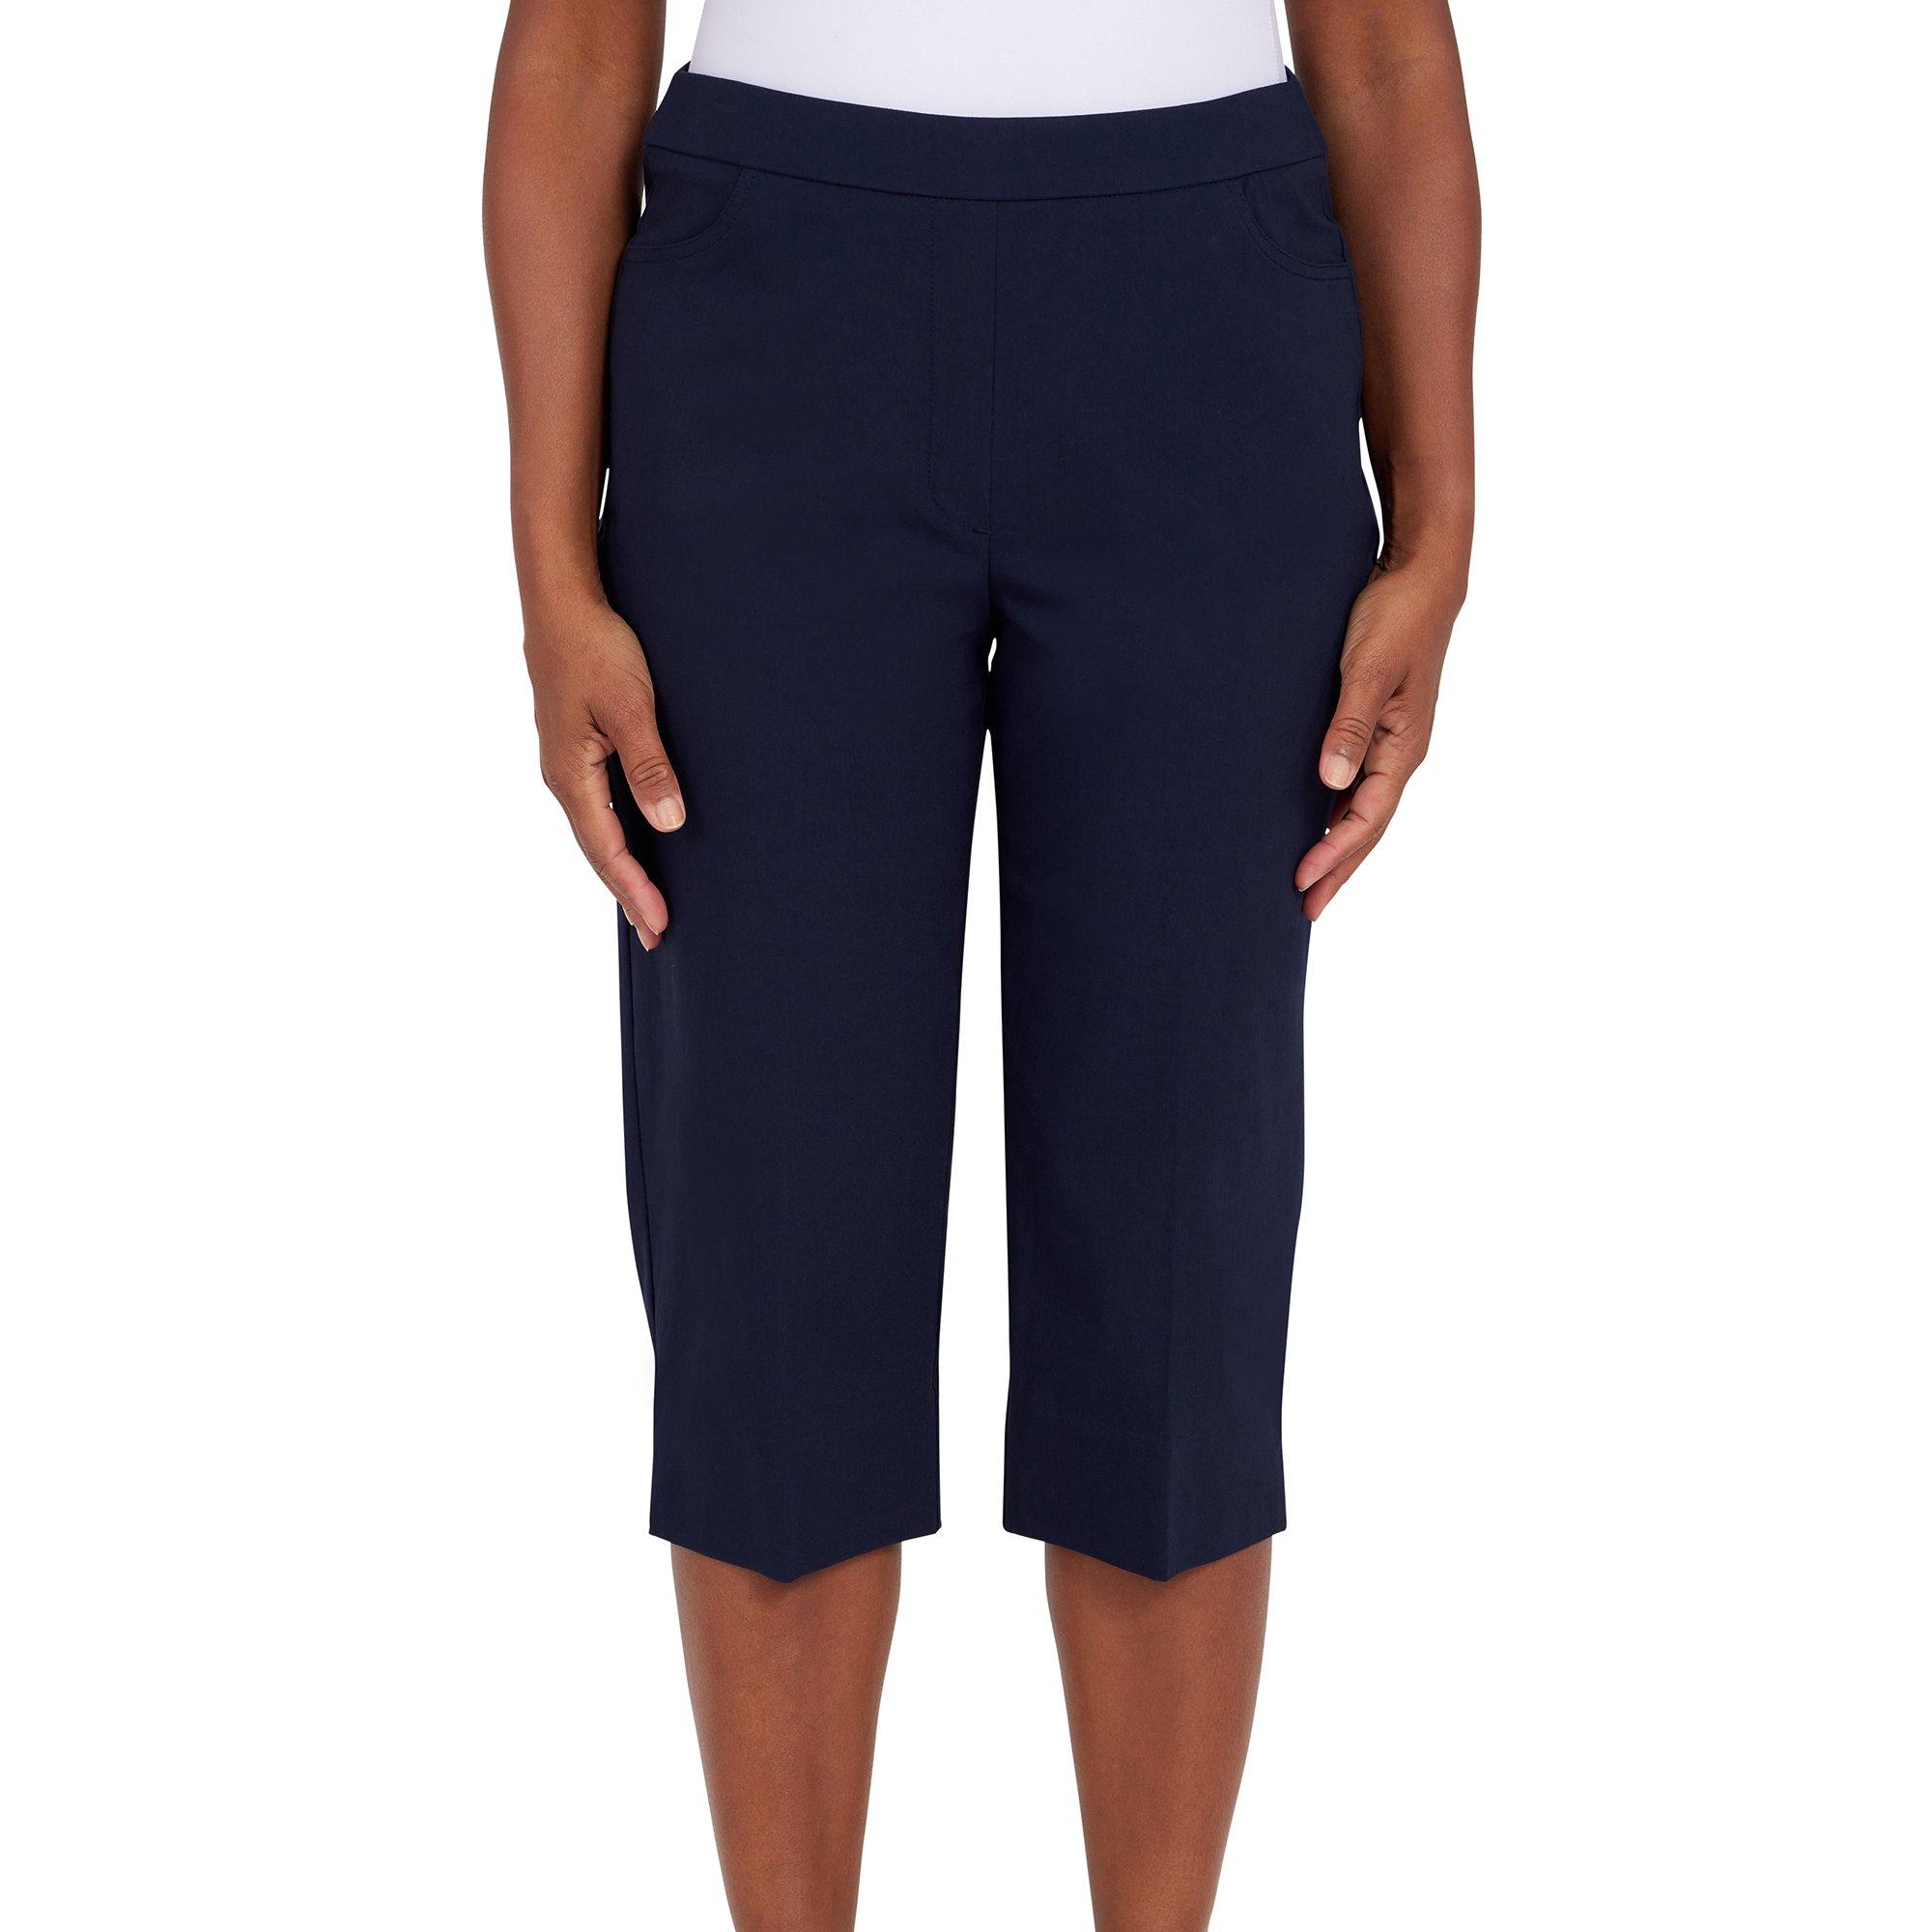 Style & Co Women's Petite Pull-On Capri Pants (14 Petite, New Uniform Blue)